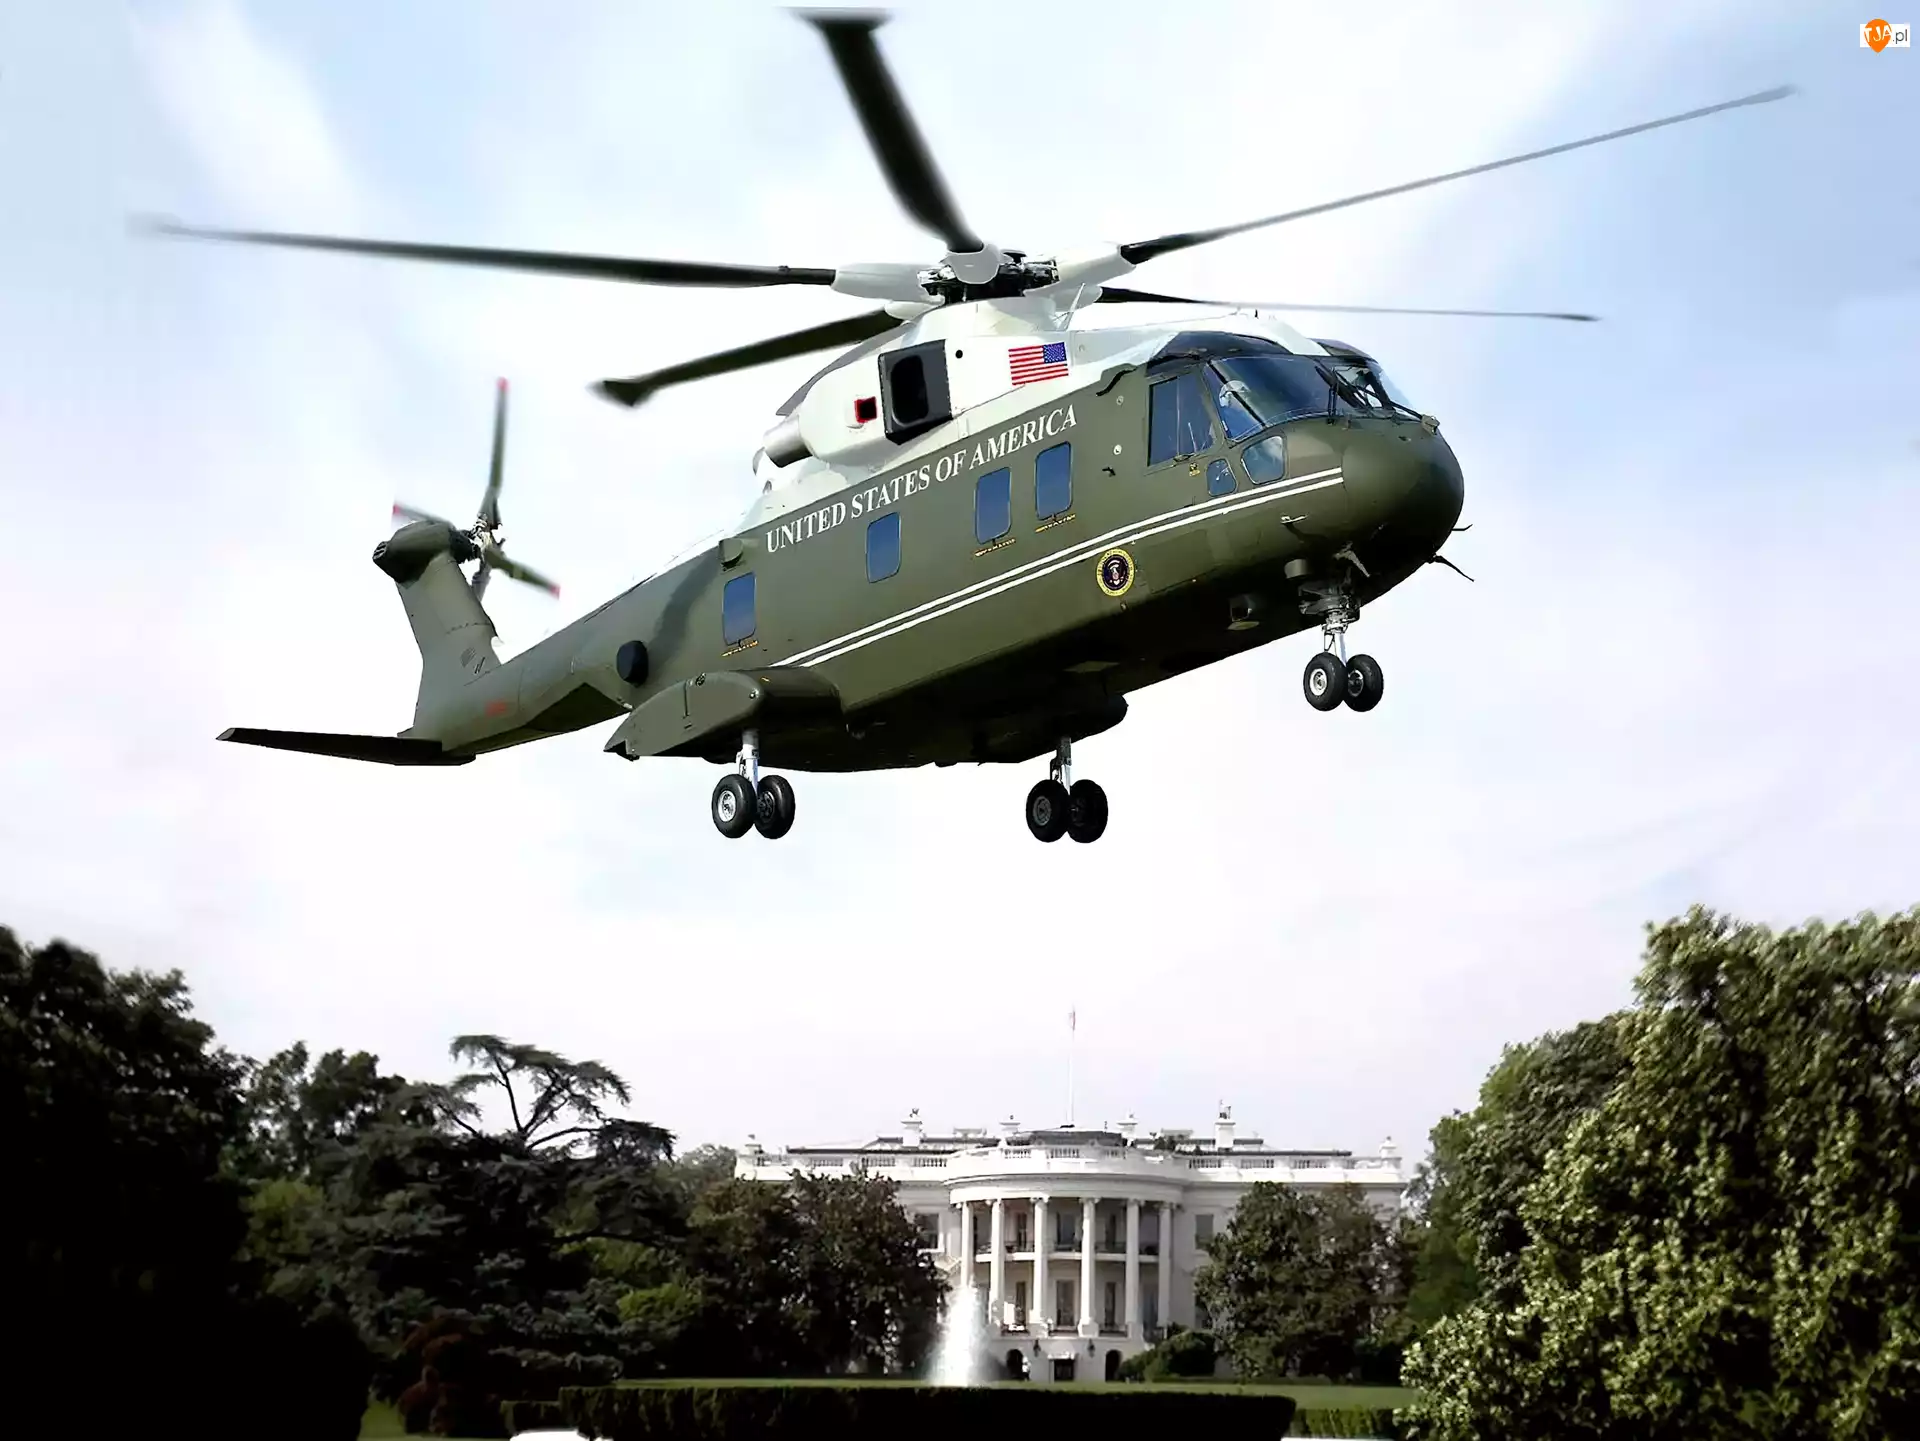 Dom, Lockheed Martin, Presidential Hawk, VH-71, Biały